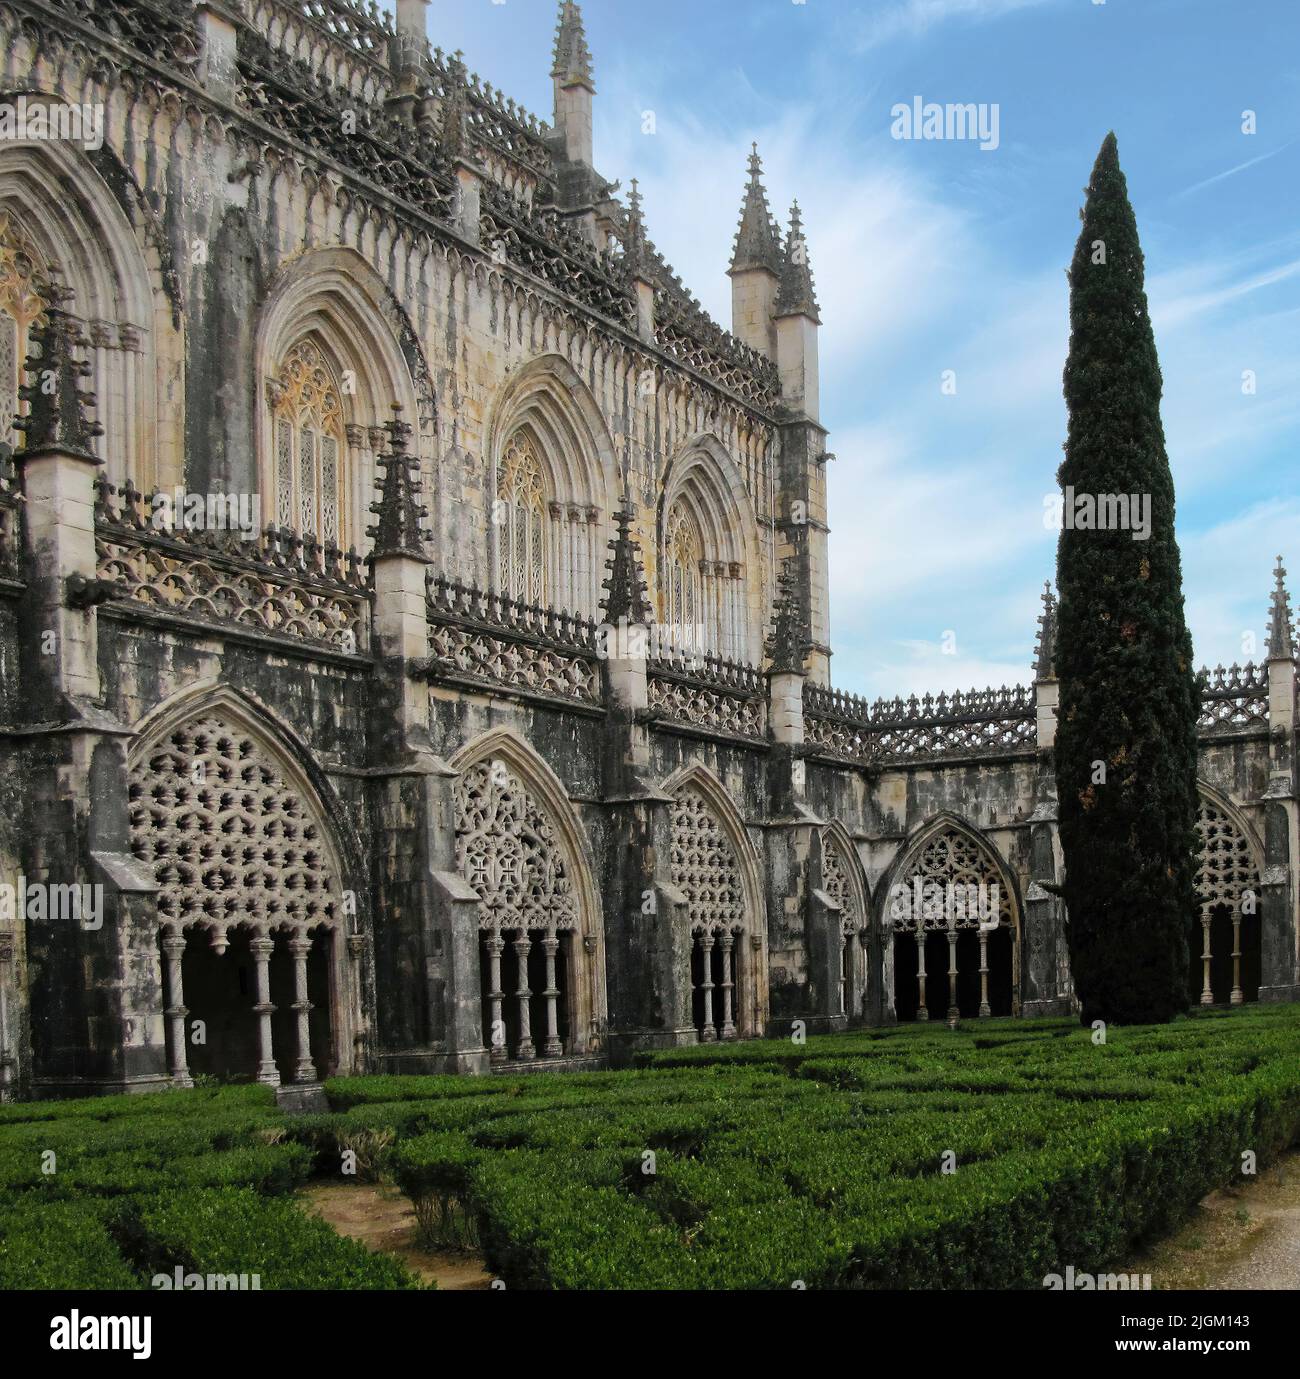 Il bellissimo monastero di Batalha si trova in Portogallo nella città di Batalha e costruito in stile gotico con parti in stile manuelino. Foto Stock